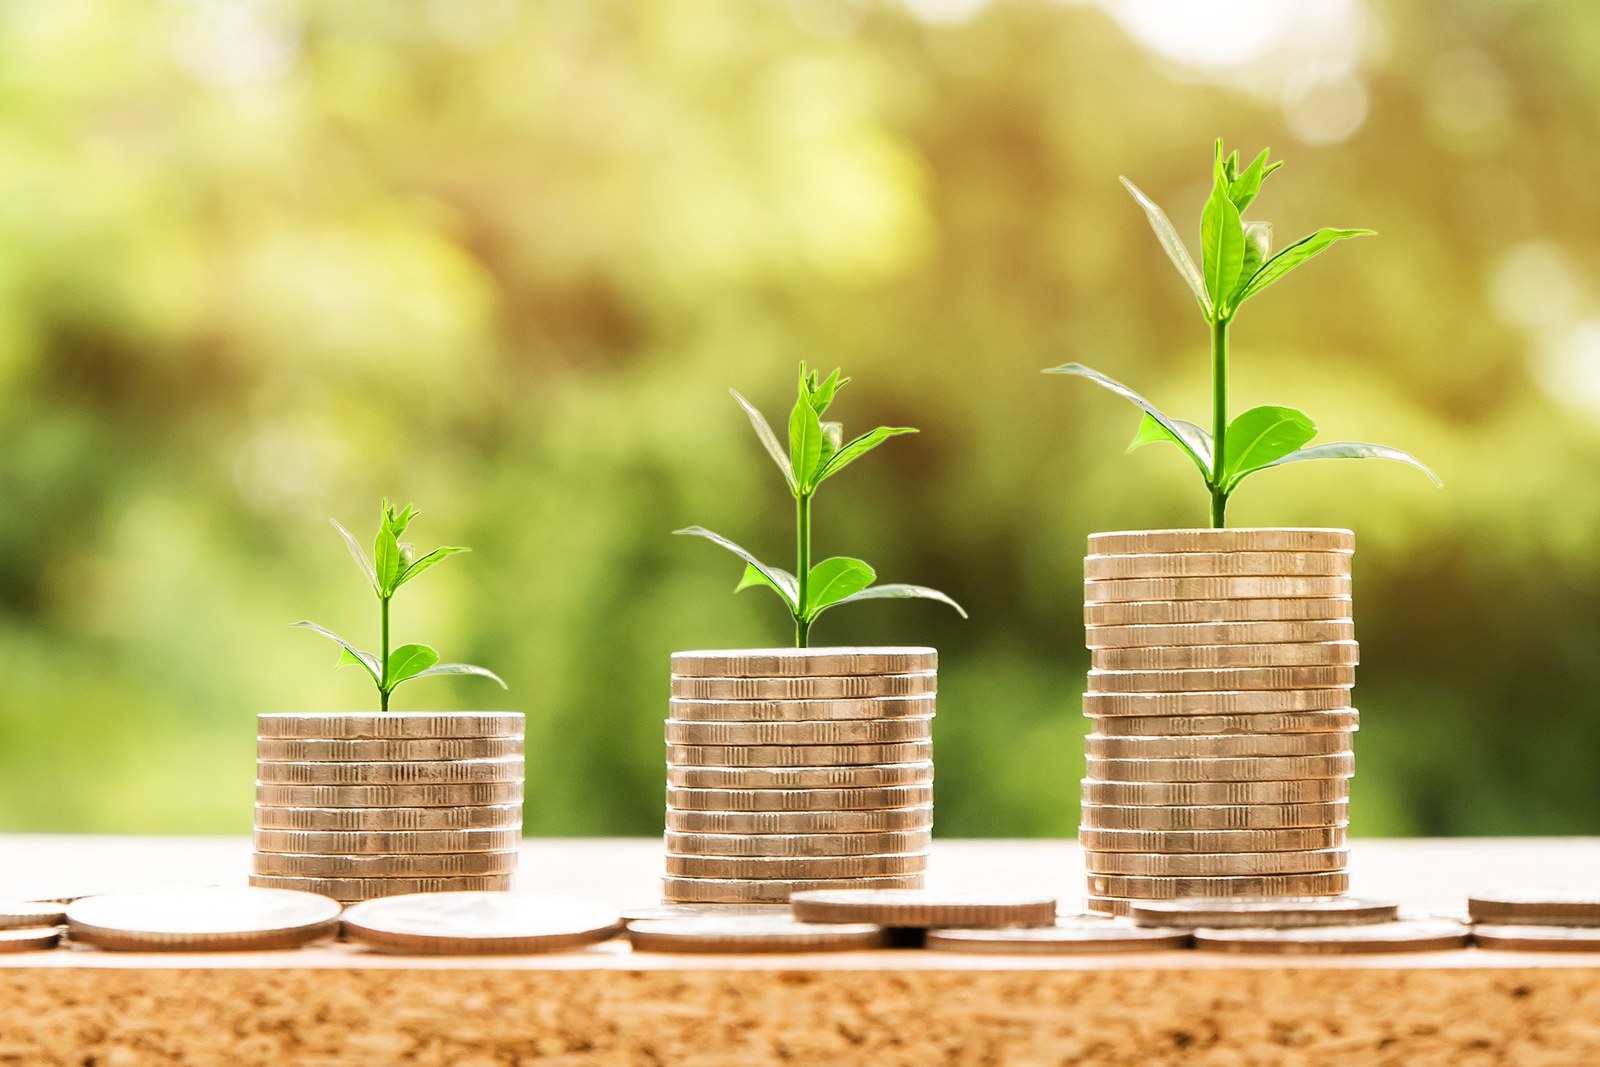 Bild zeigt Münzen mit einer Pflanze auf jeden Stapel, wird verwendet für das Thema Kostenvergleich; copyright Pixabay